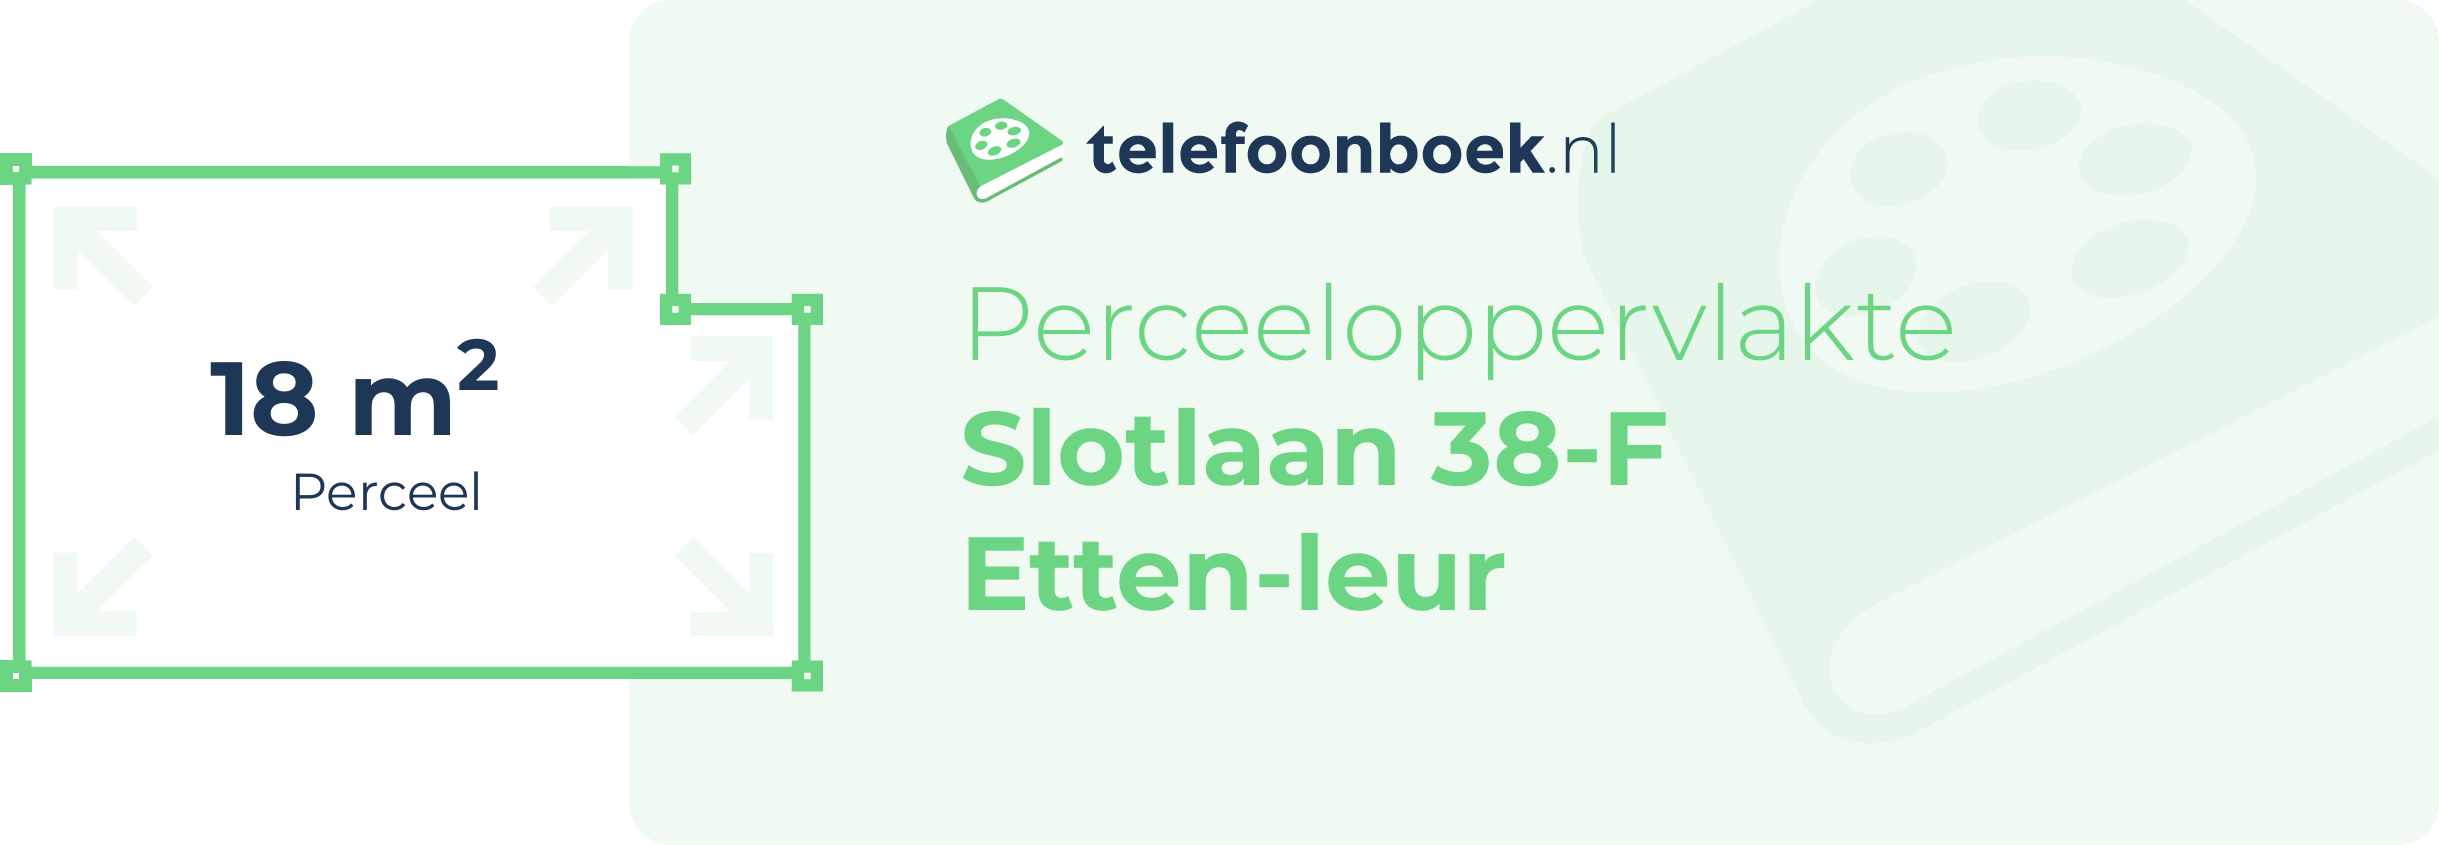 Perceeloppervlakte Slotlaan 38-F Etten-Leur